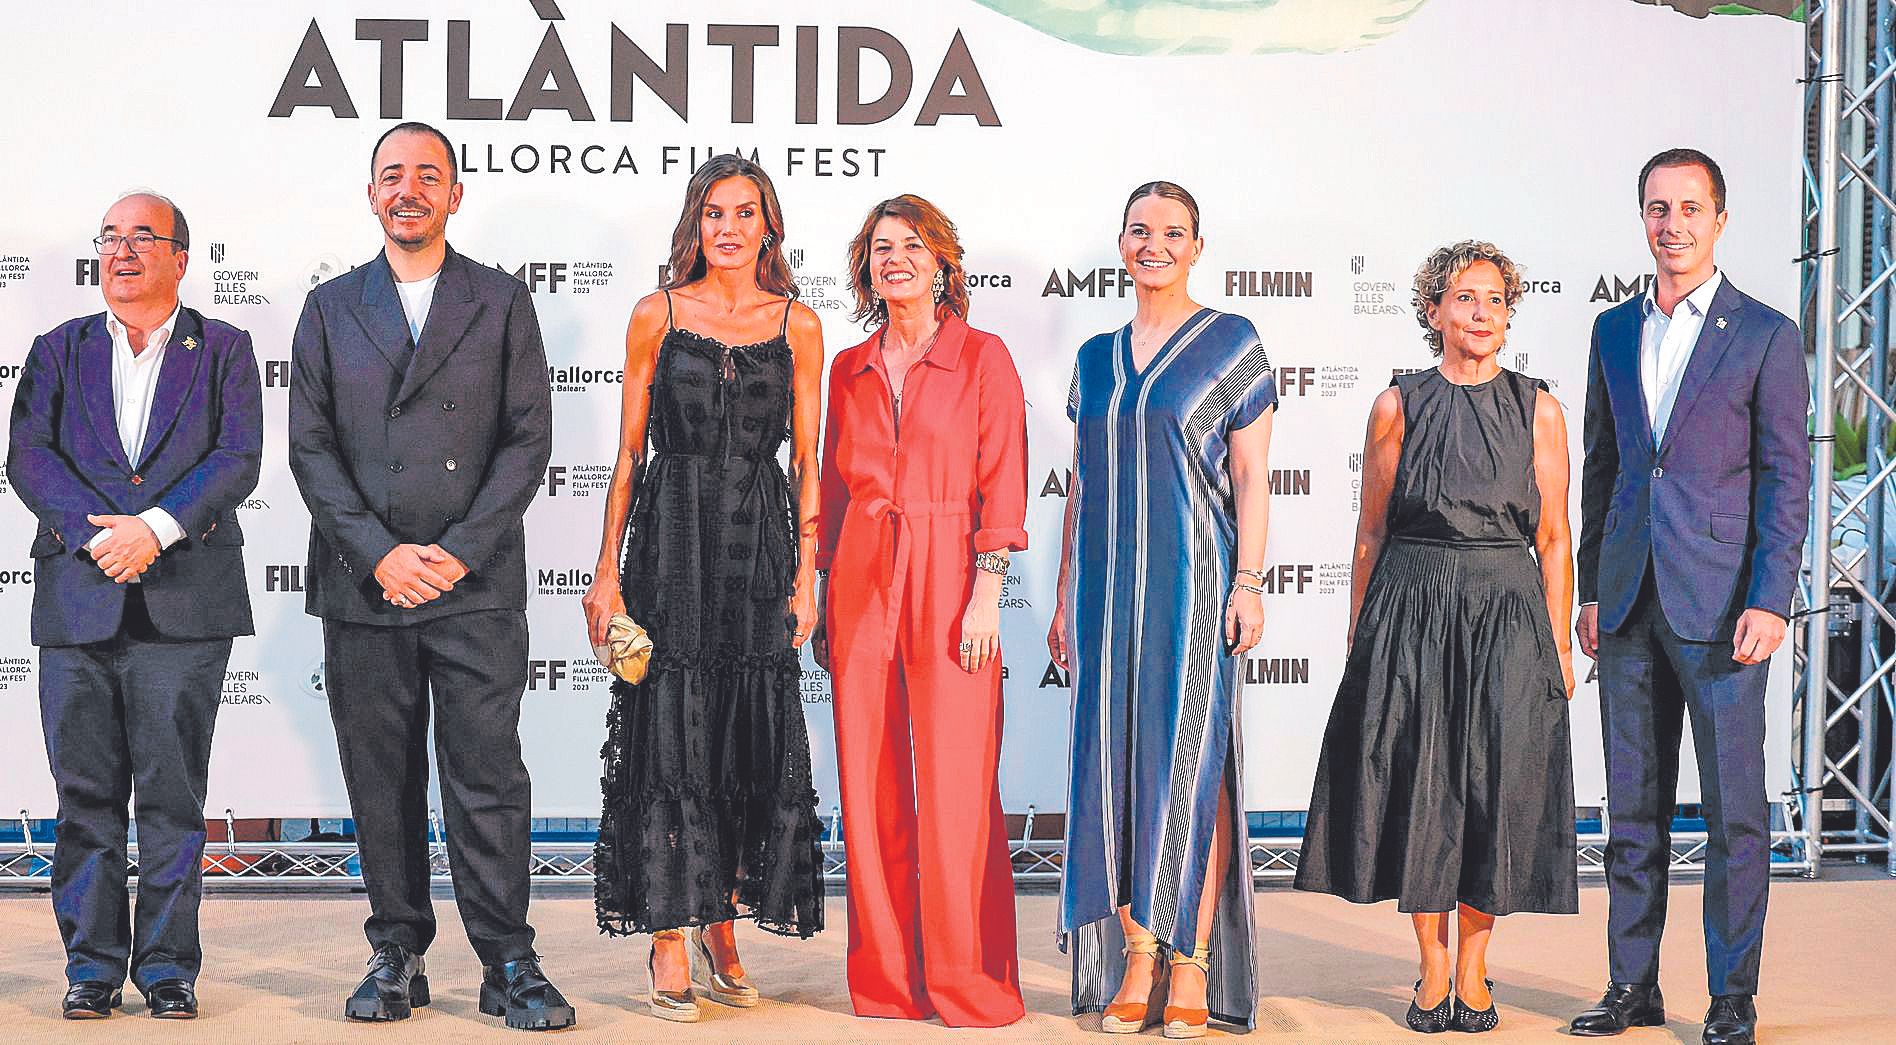 La reina Letizia junto al ministro de Cultura, Miquel Iceta (i), el director del Atlàntida Film Fest, Jaume Ripoll (2i) la actriz francesa Irène Jacob (c) , la presidenta balear, Marga Prohens (3d) y el presidente del Consell de Mallorca, Llorenç Galmés.